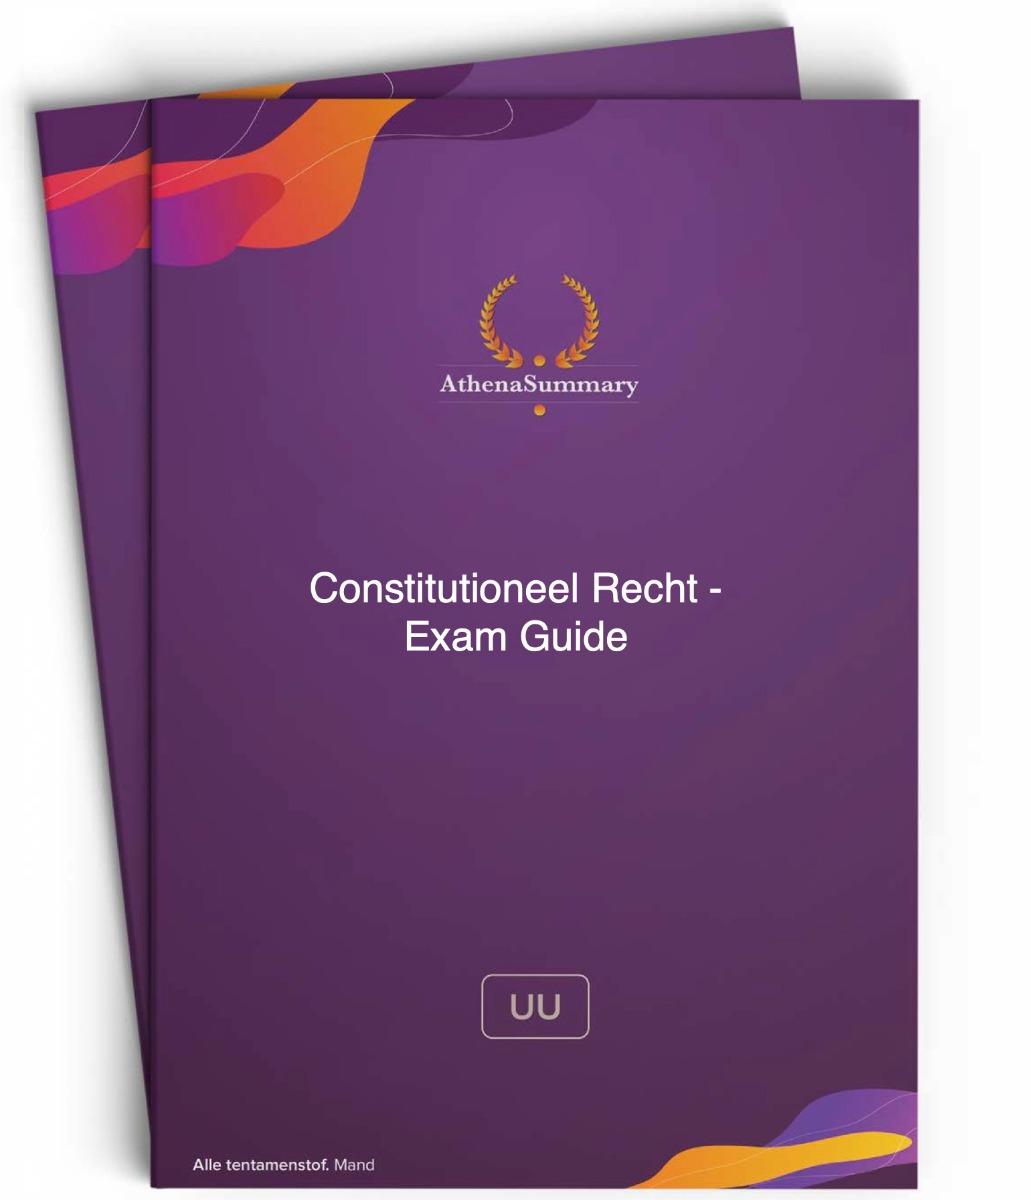 Exam Guide - Constitutioneel Recht